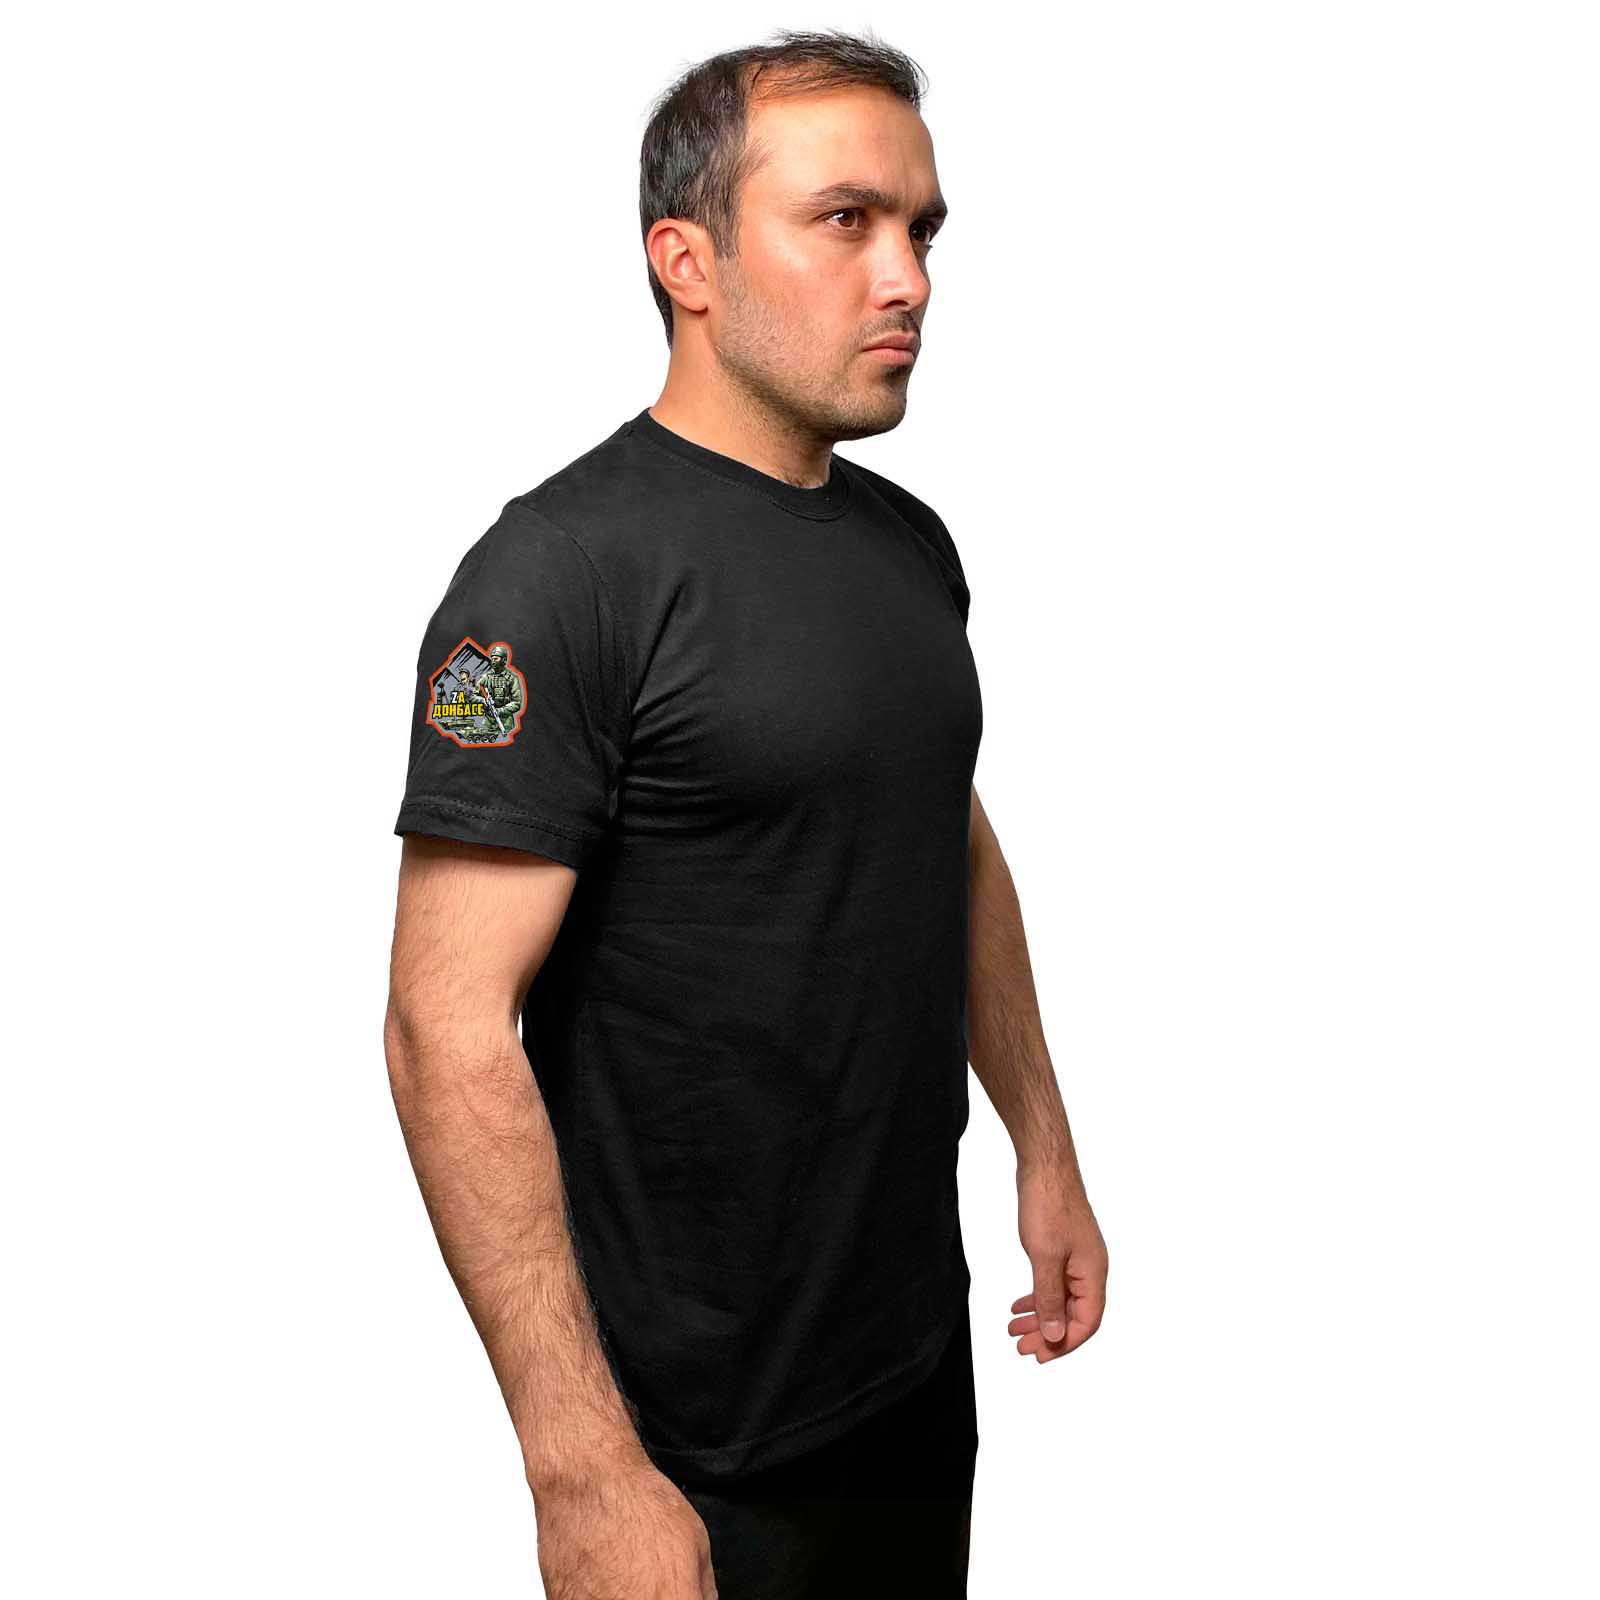 Чёрная футболка "Zа Донбасс" с термотрансфером на рукаве